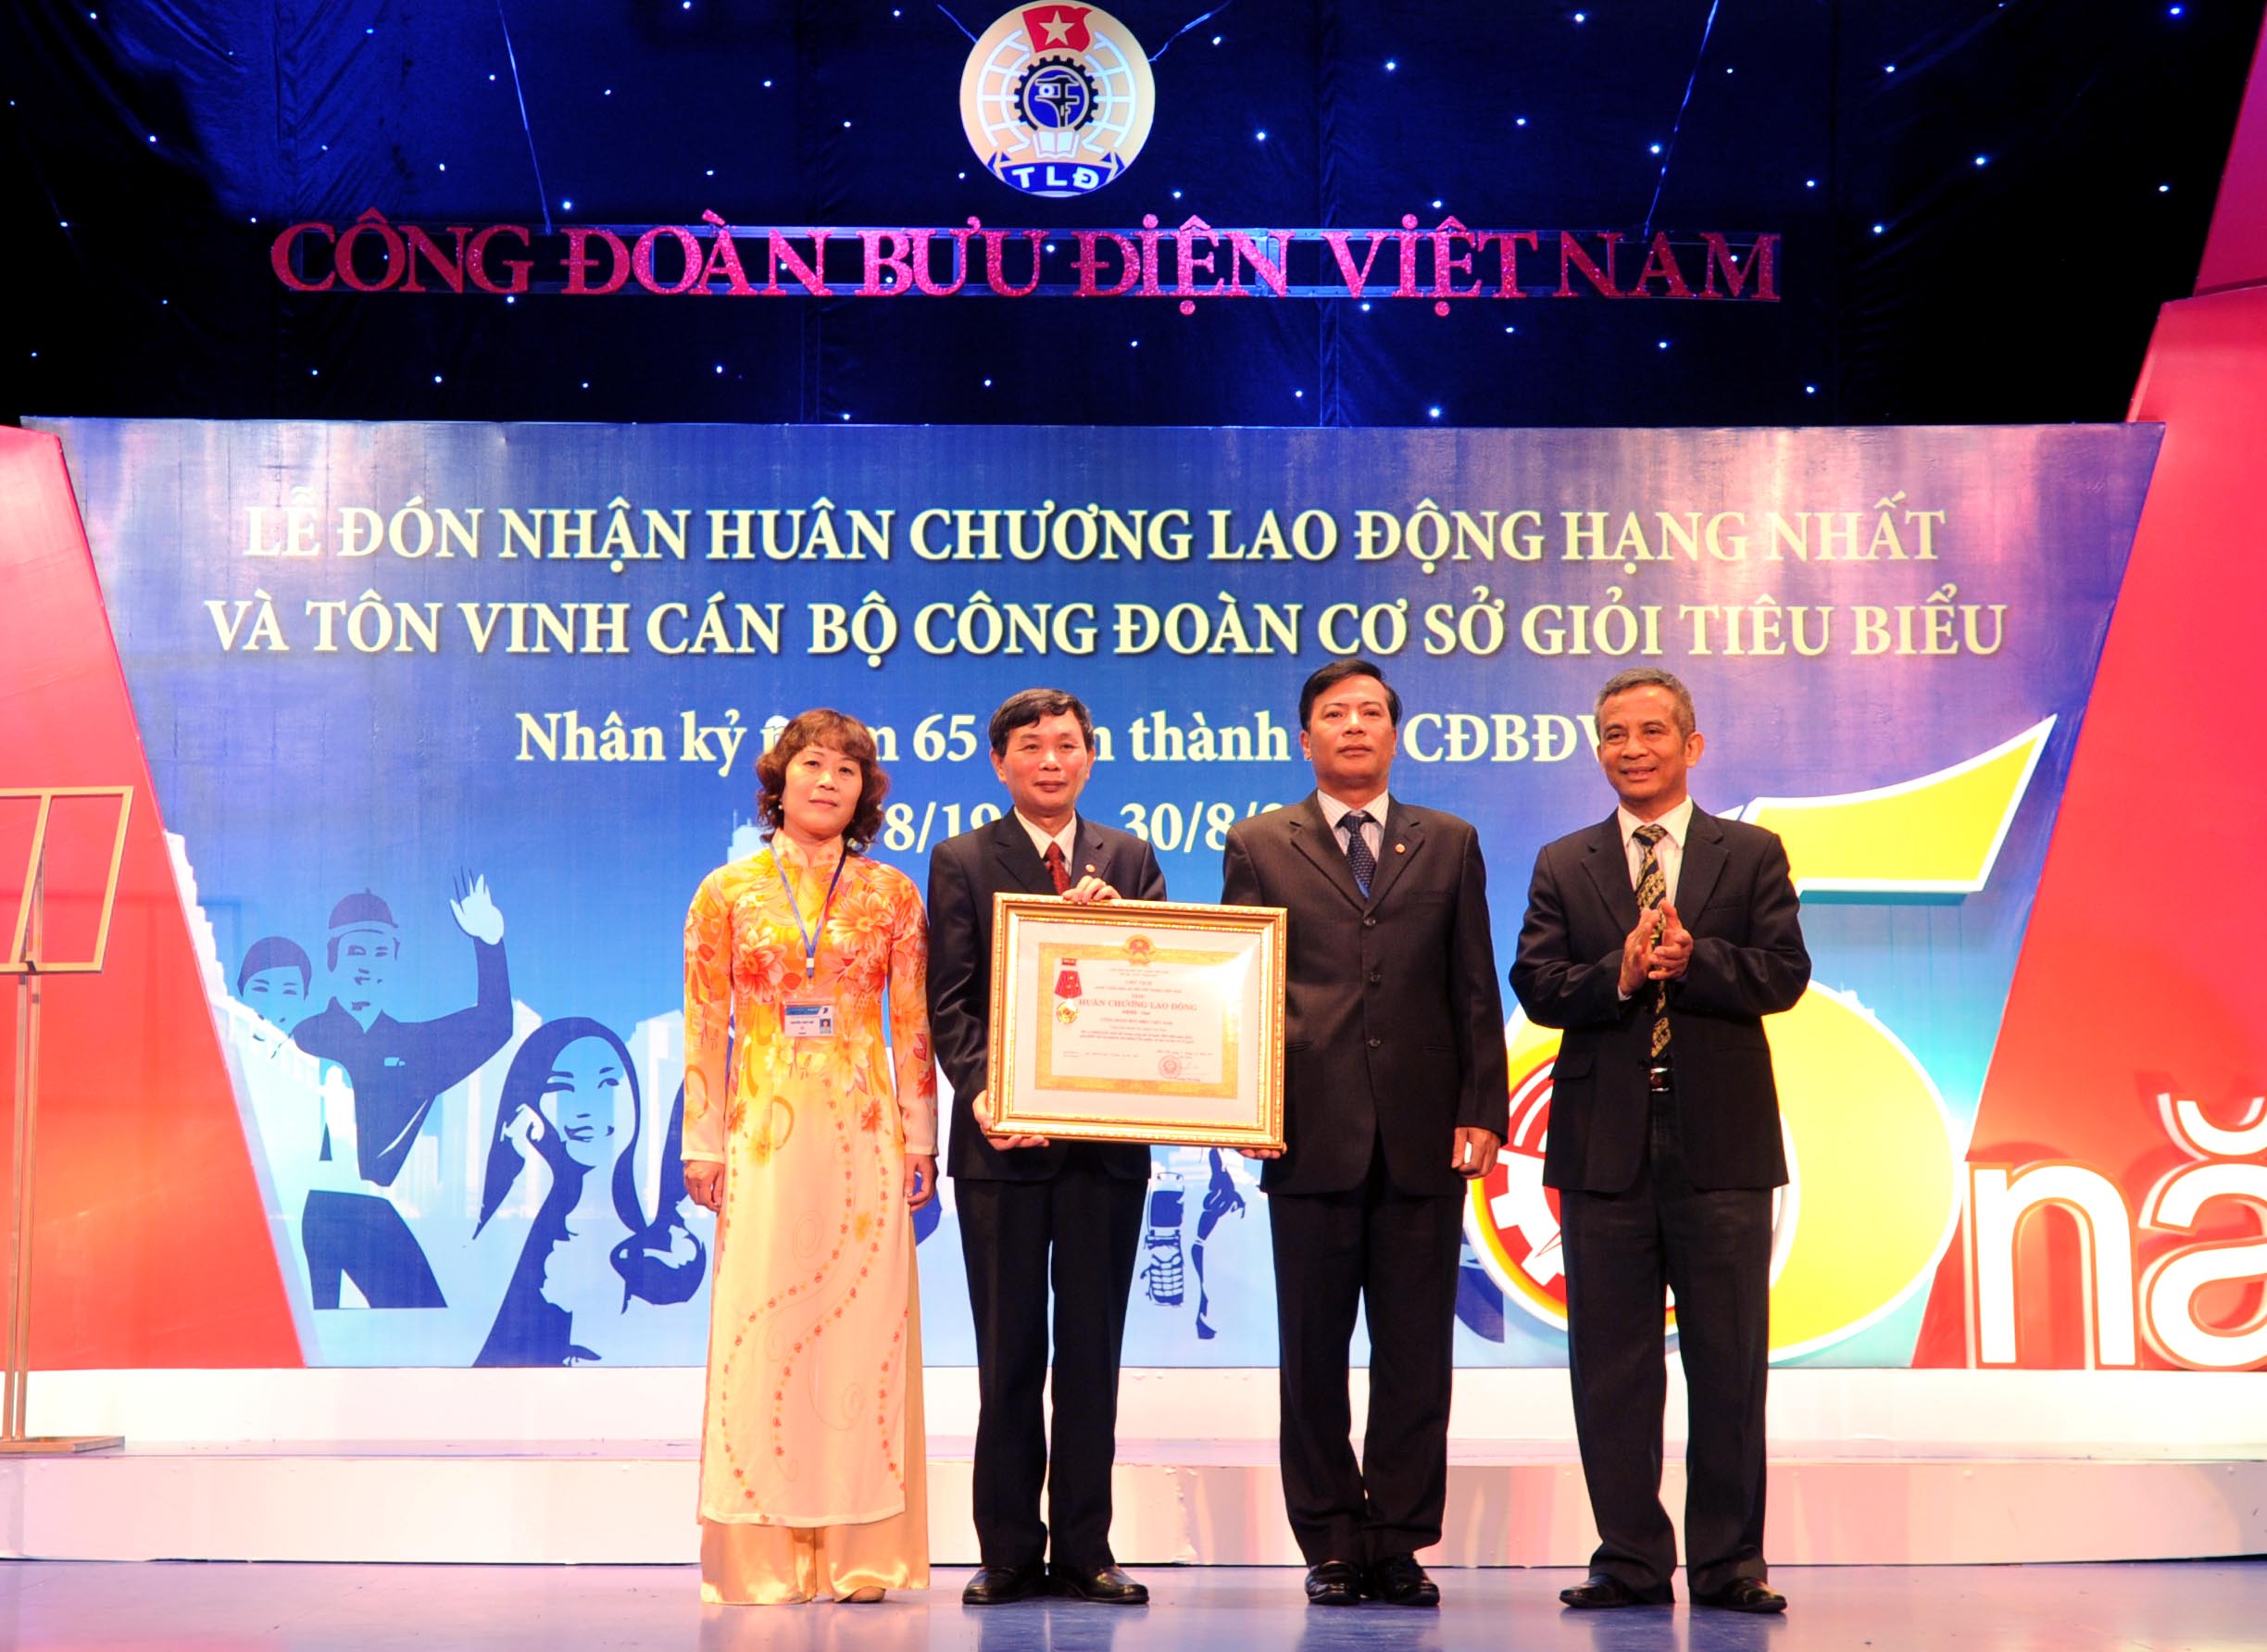 Đồng chí Đặng Ngọc Tùng, Uỷ viên Trung ương Đảng, Chủ tịch Tổng Liên đoàn Lao động Việt Nam trao Huân chương Lao động hạng Nhất cho Công đoàn Bưu điện Việt Nam.